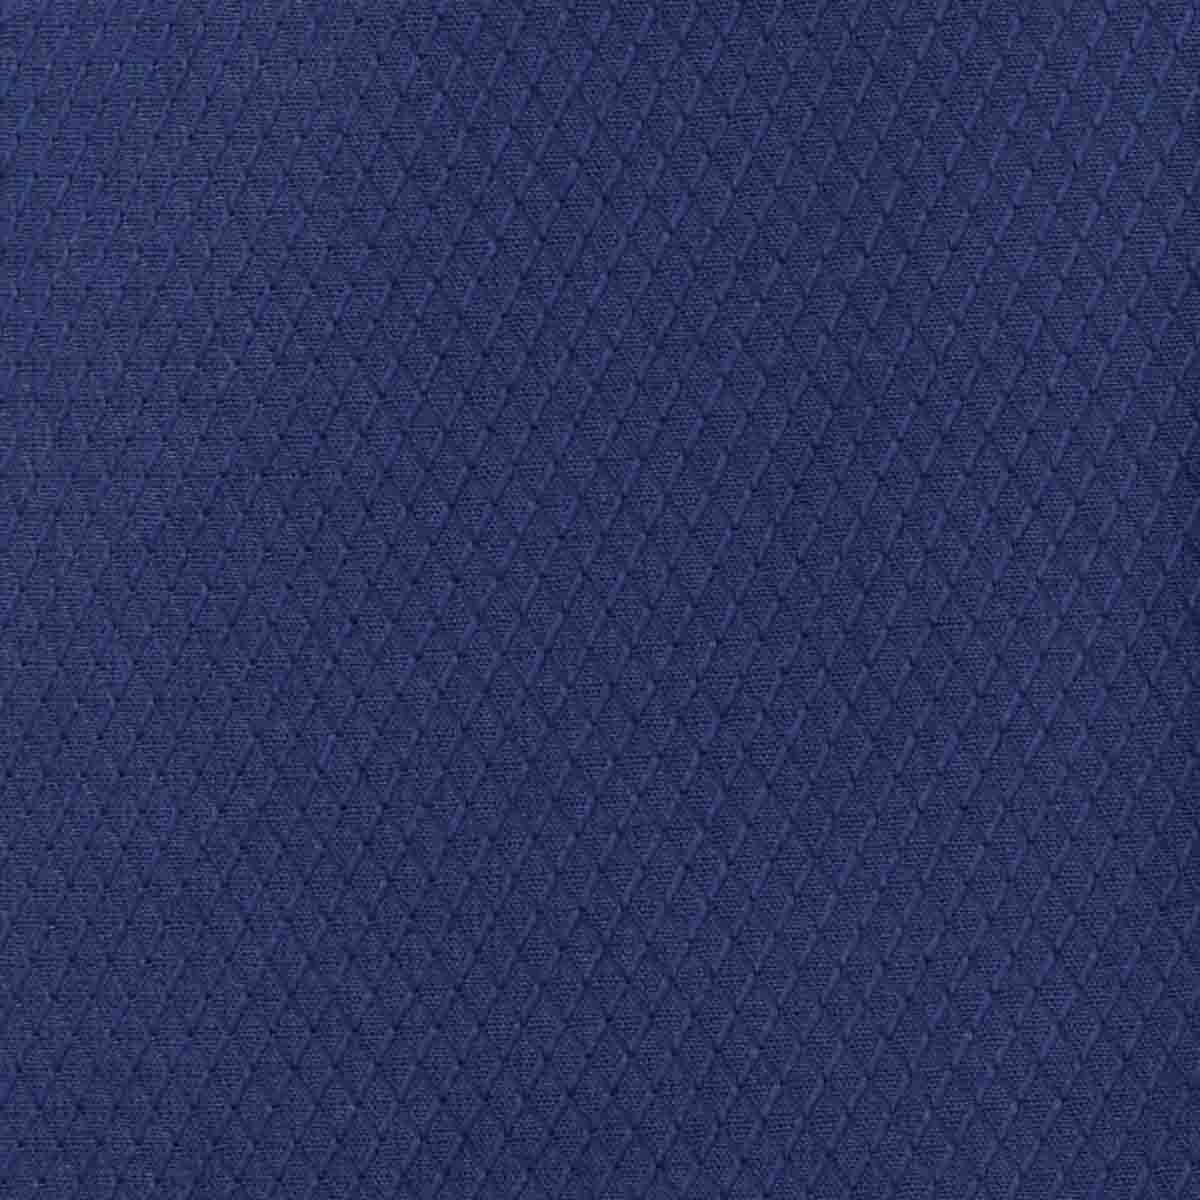 Camisa de Vestir Therin Color Azul Carlo Corinto Slim Fit